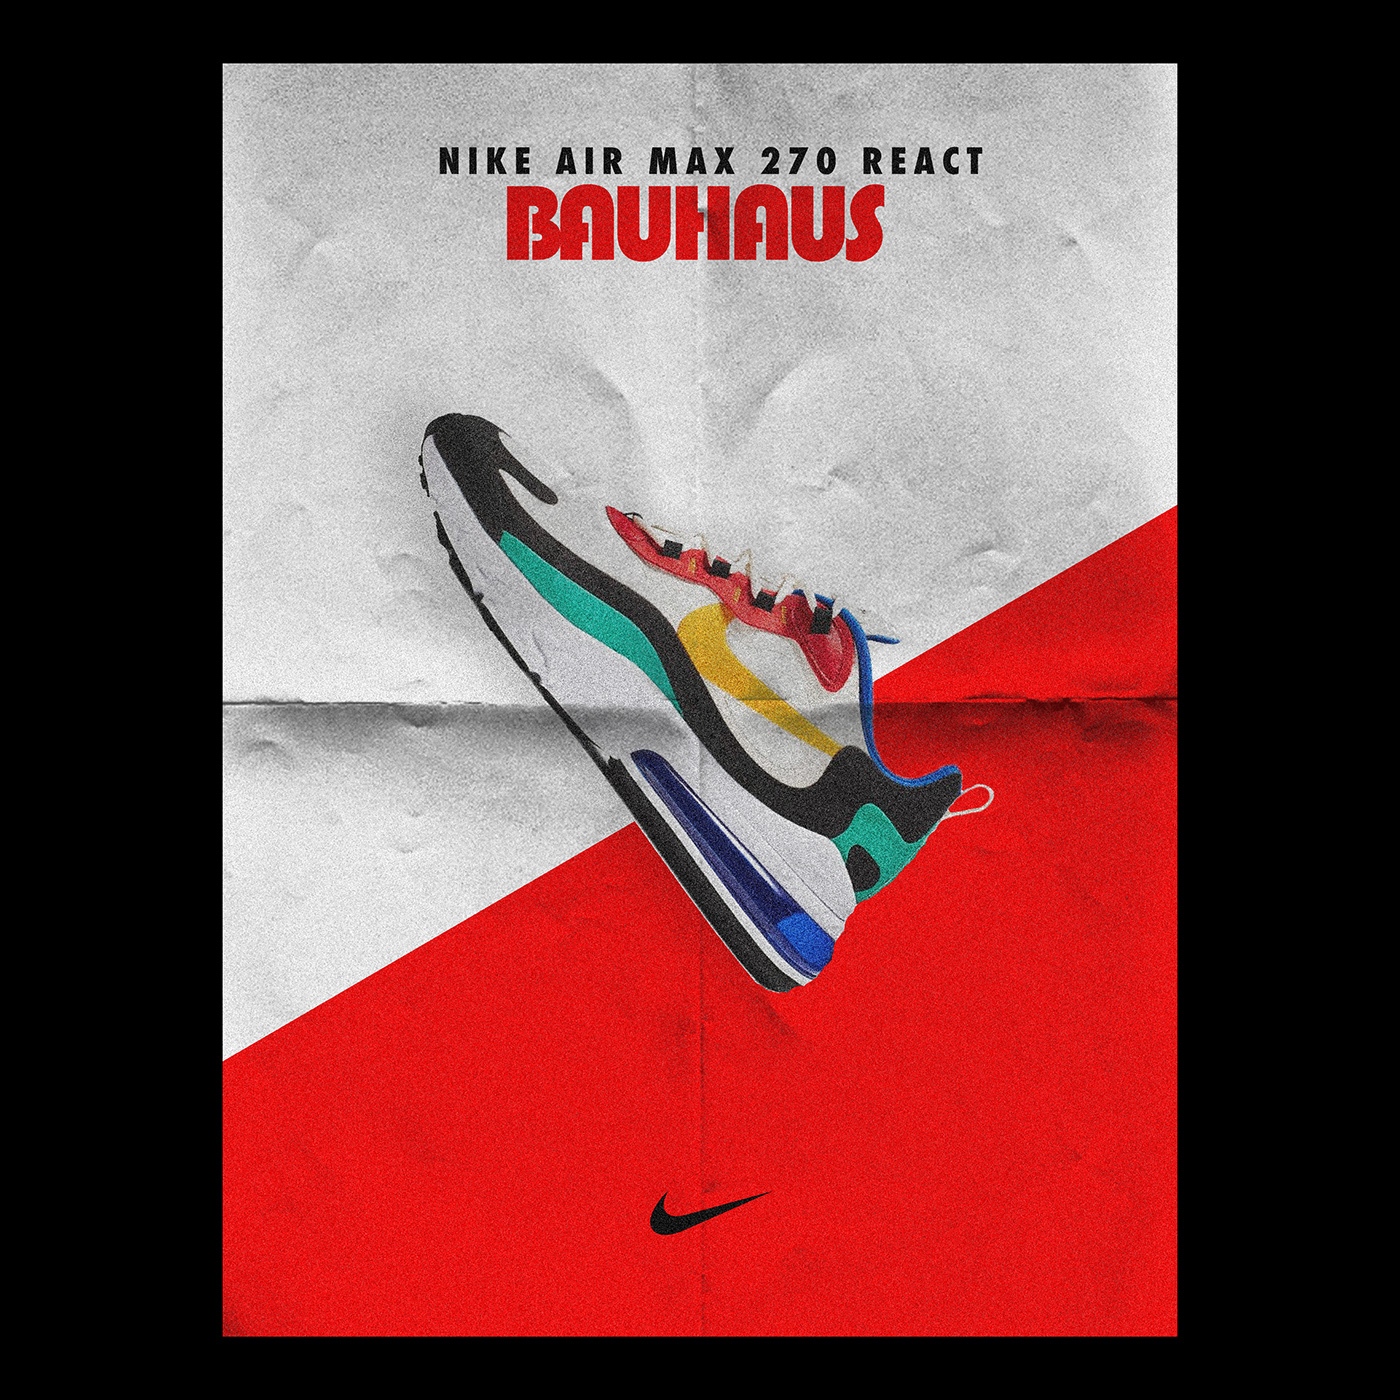 graphic design  Nike airmax NikeSB posters bauhaus SCHOOL OF BAUHAUS